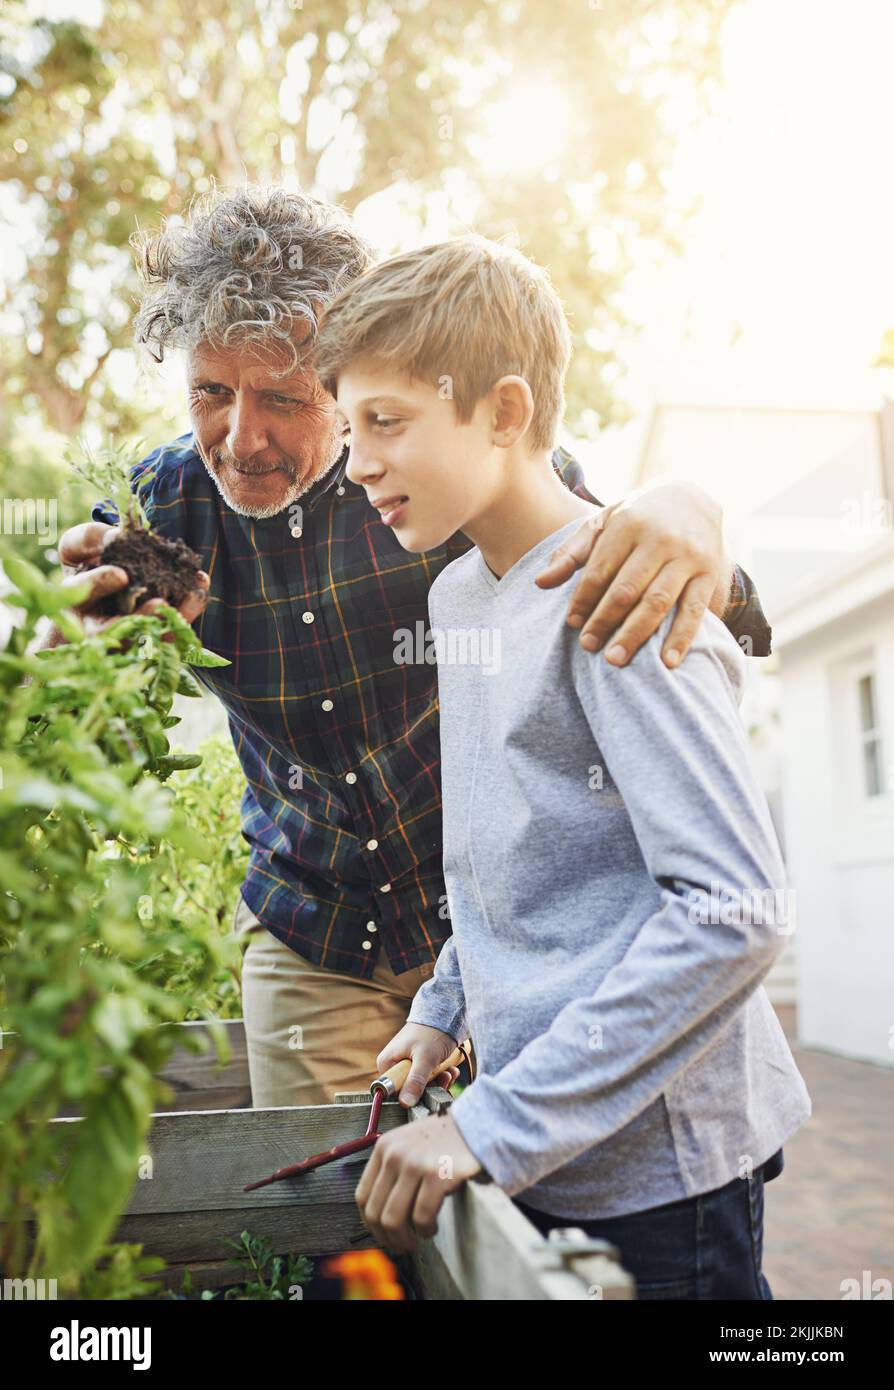 Compartir su amor por la jardinería con su nieto. un abuelo enseñándole a su nieto sobre jardinería. Foto de stock